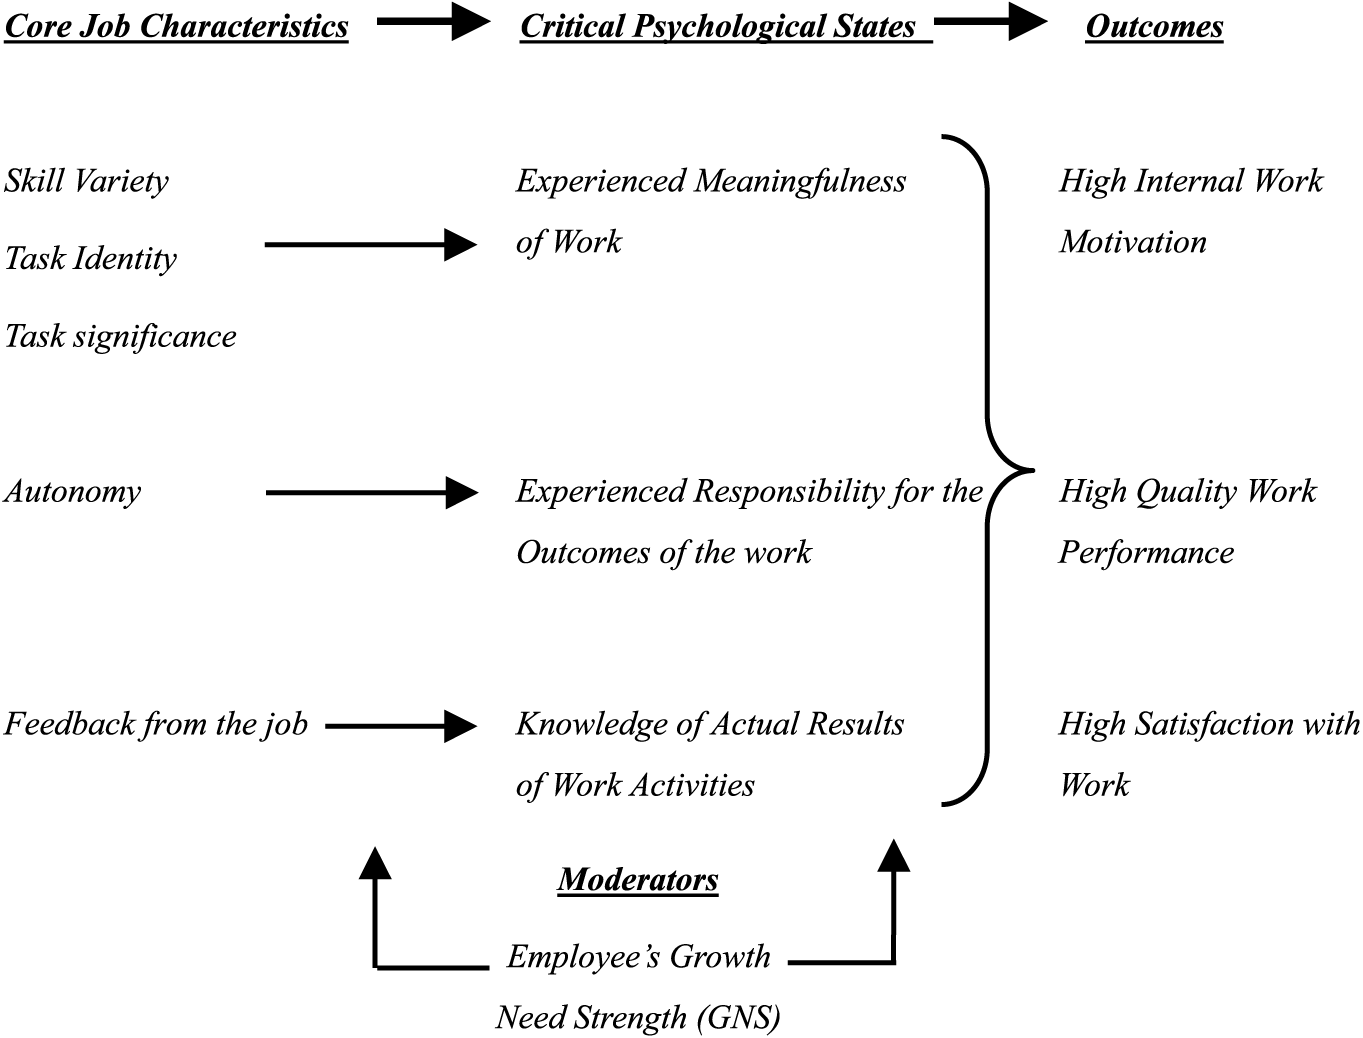 Core Job Characteristics